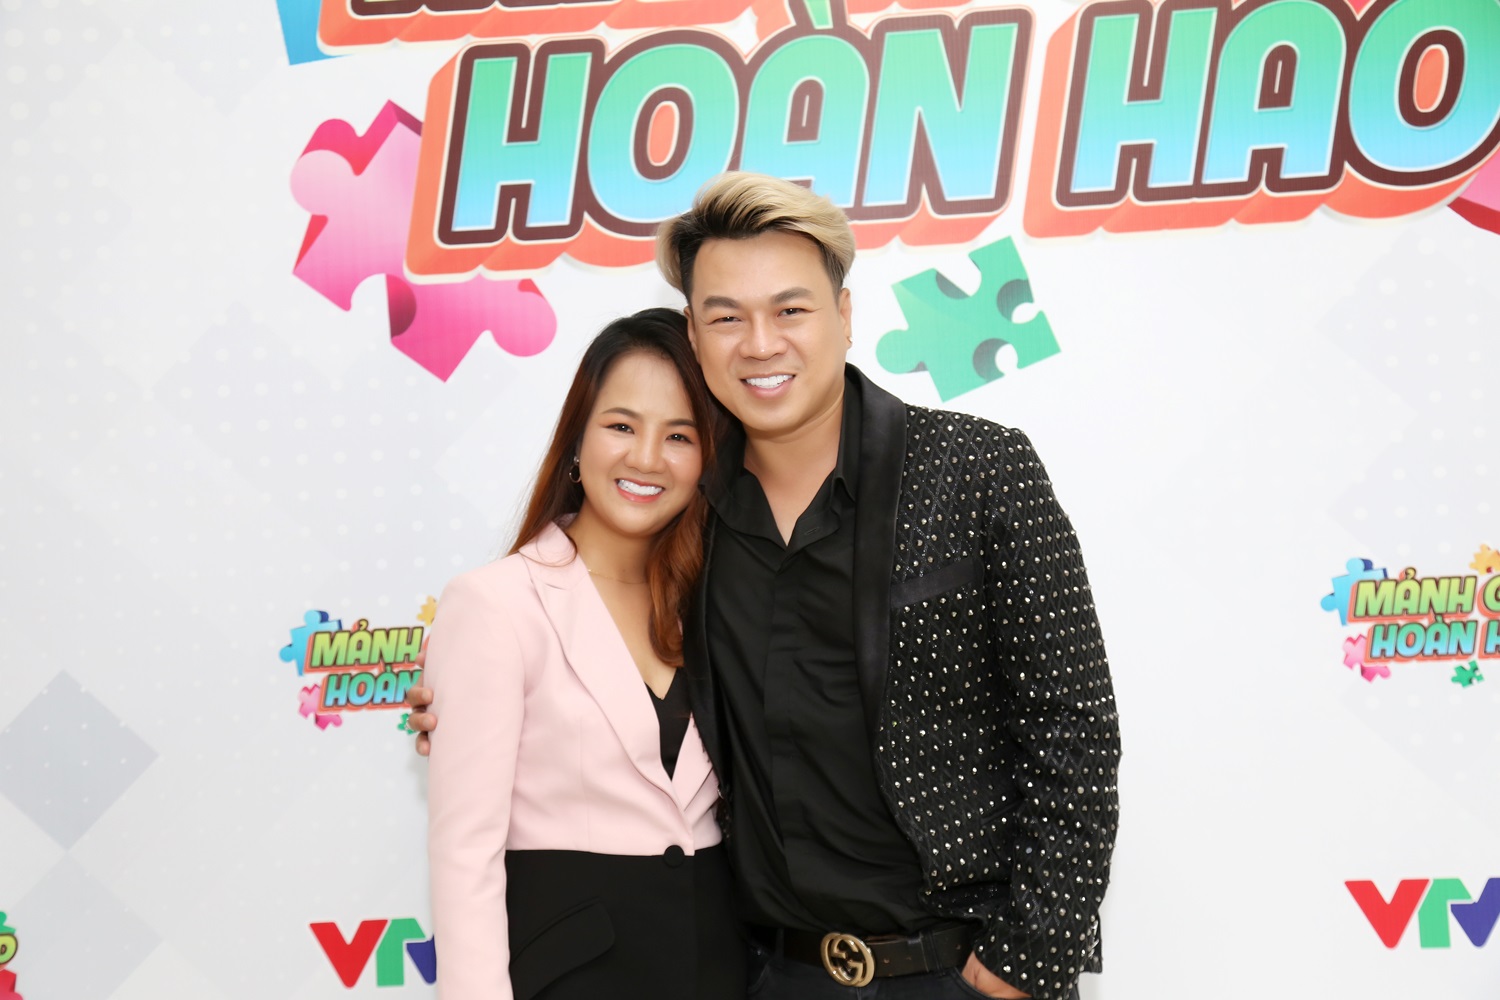 Huy Kid cùng vợ Việt Hà tham gia "Mảnh ghép hoàn hảo"